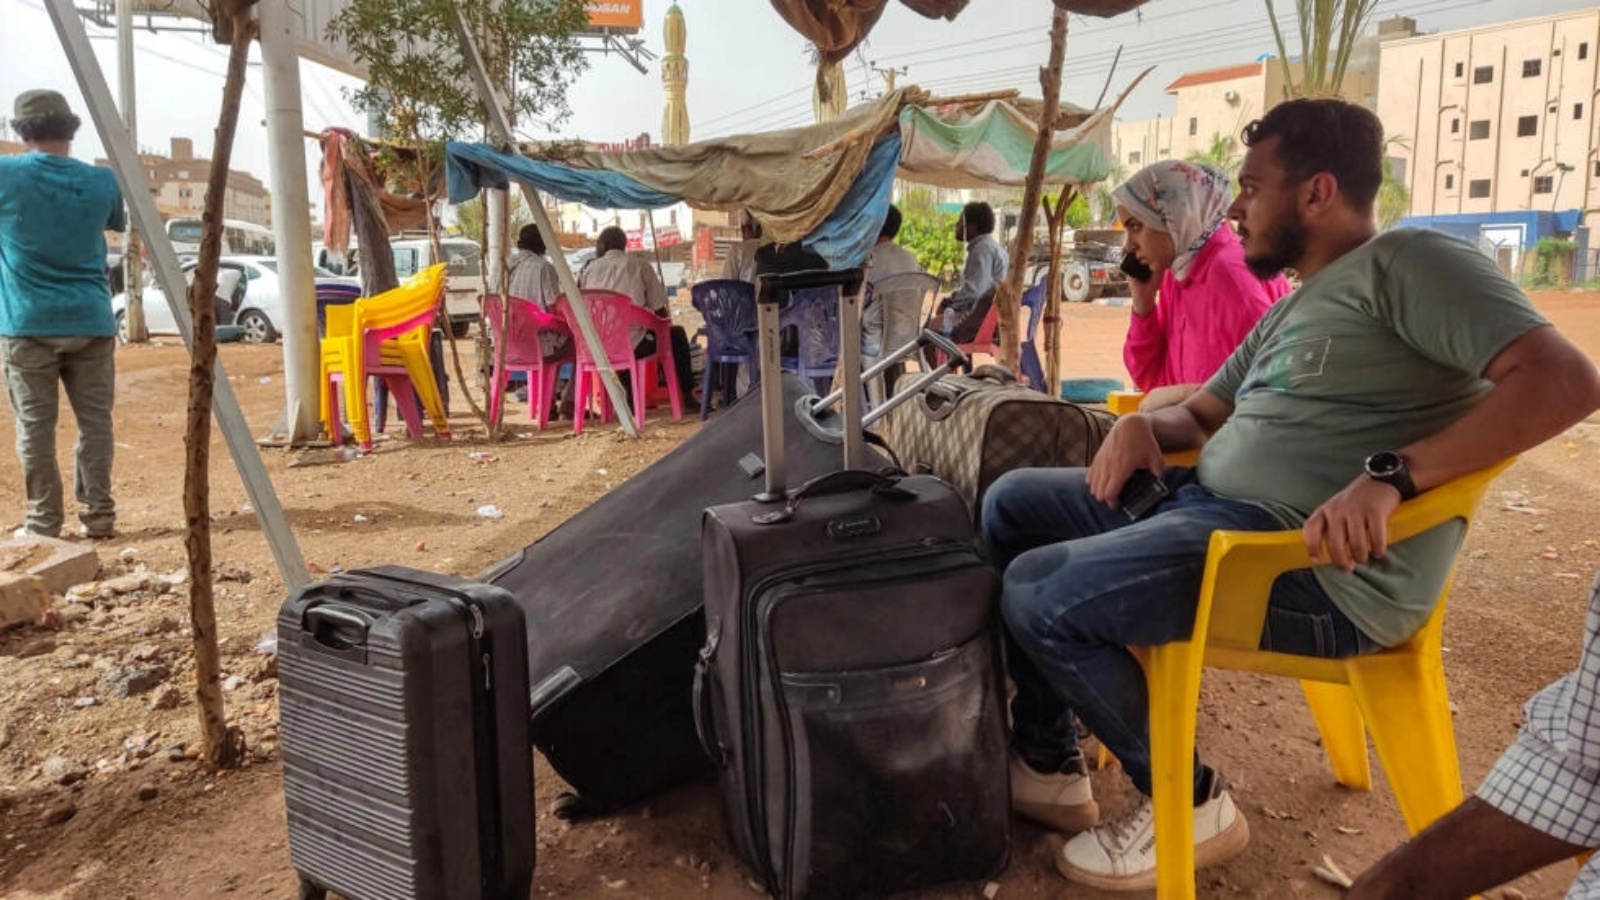 أشخاص ينتظرون مع امتعتهم للصعود إلى حافلة في جنوب الخرطوم في 24 أبريل 2023 هربا من املعارك بين الجيش وقوات الدعم السريع